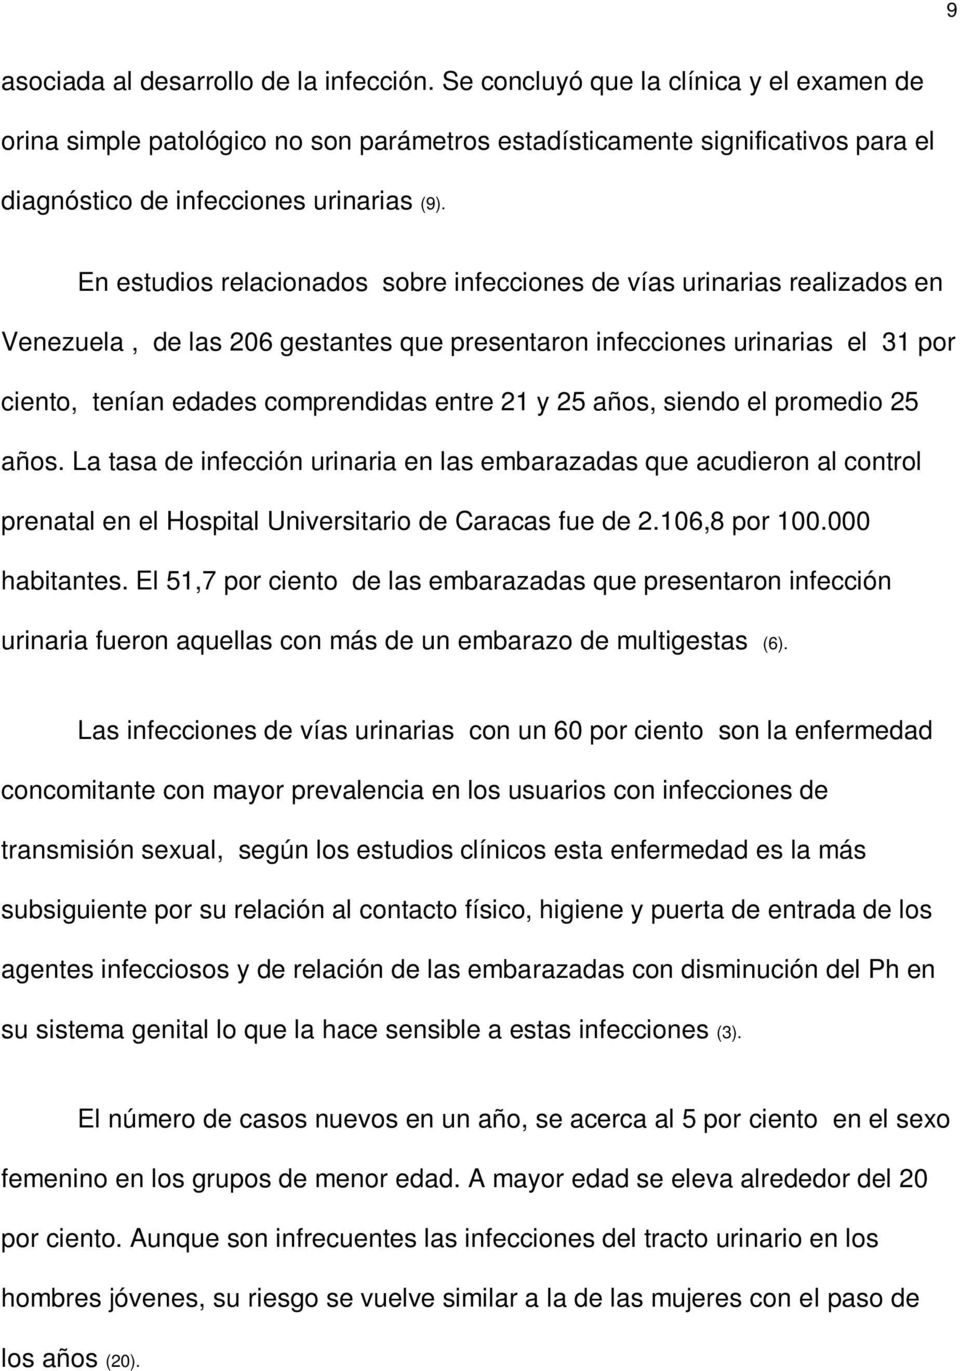 En estudios relacionados sobre infecciones de vías urinarias realizados en Venezuela, de las 206 gestantes que presentaron infecciones urinarias el 31 por ciento, tenían edades comprendidas entre 21